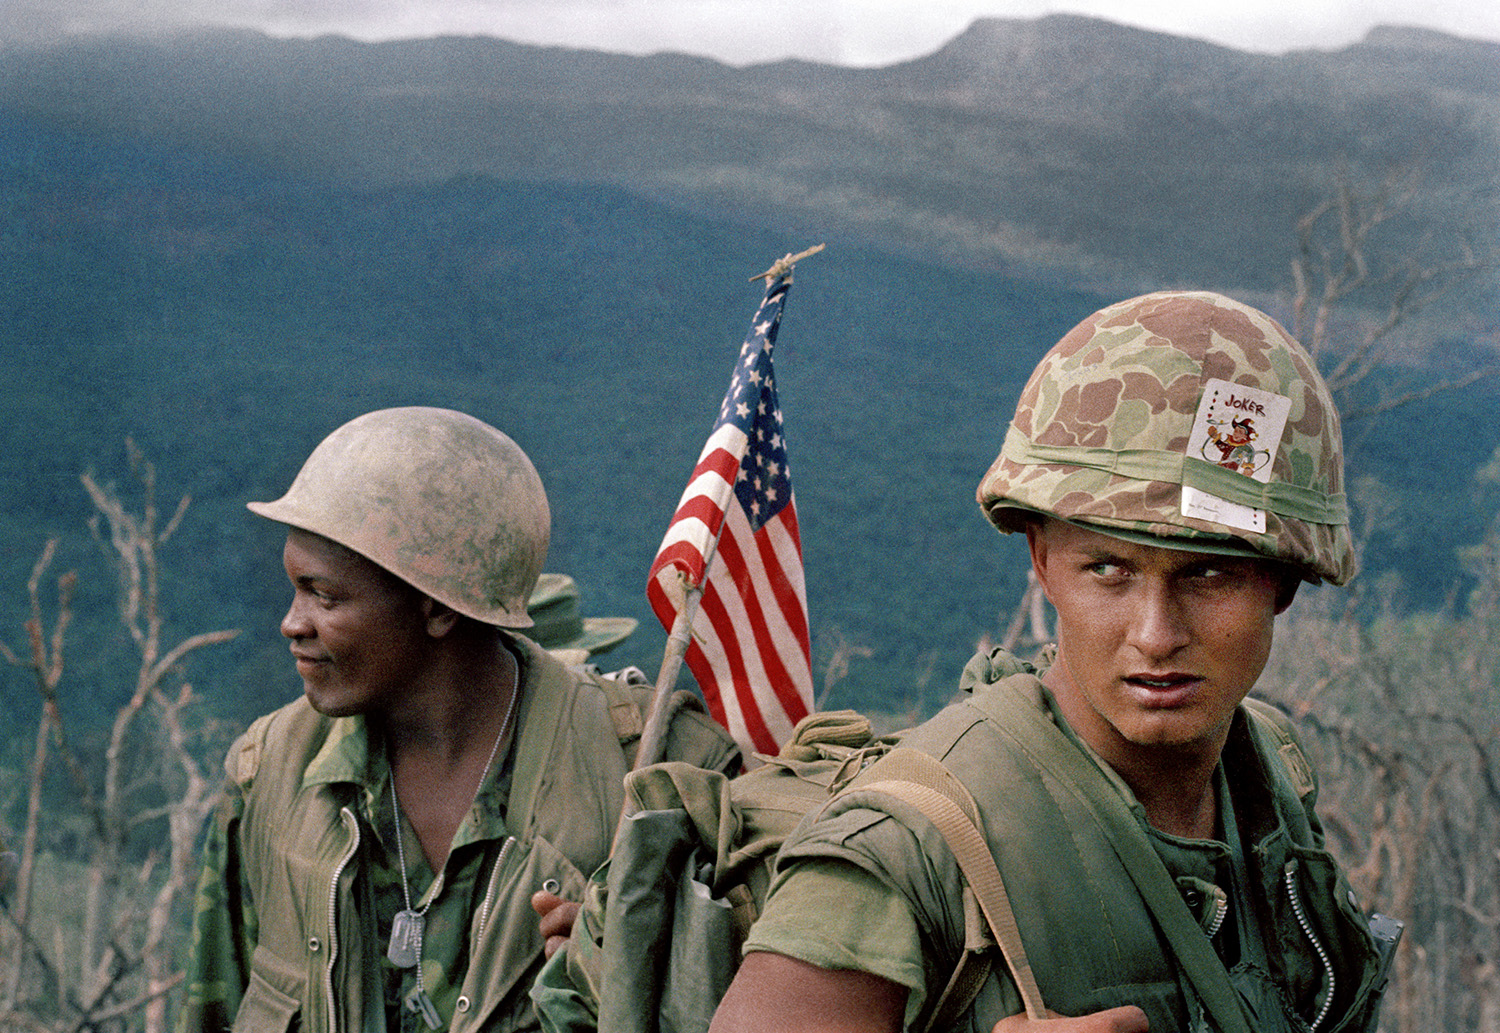 c. 1969 image of Marines in Vietnam